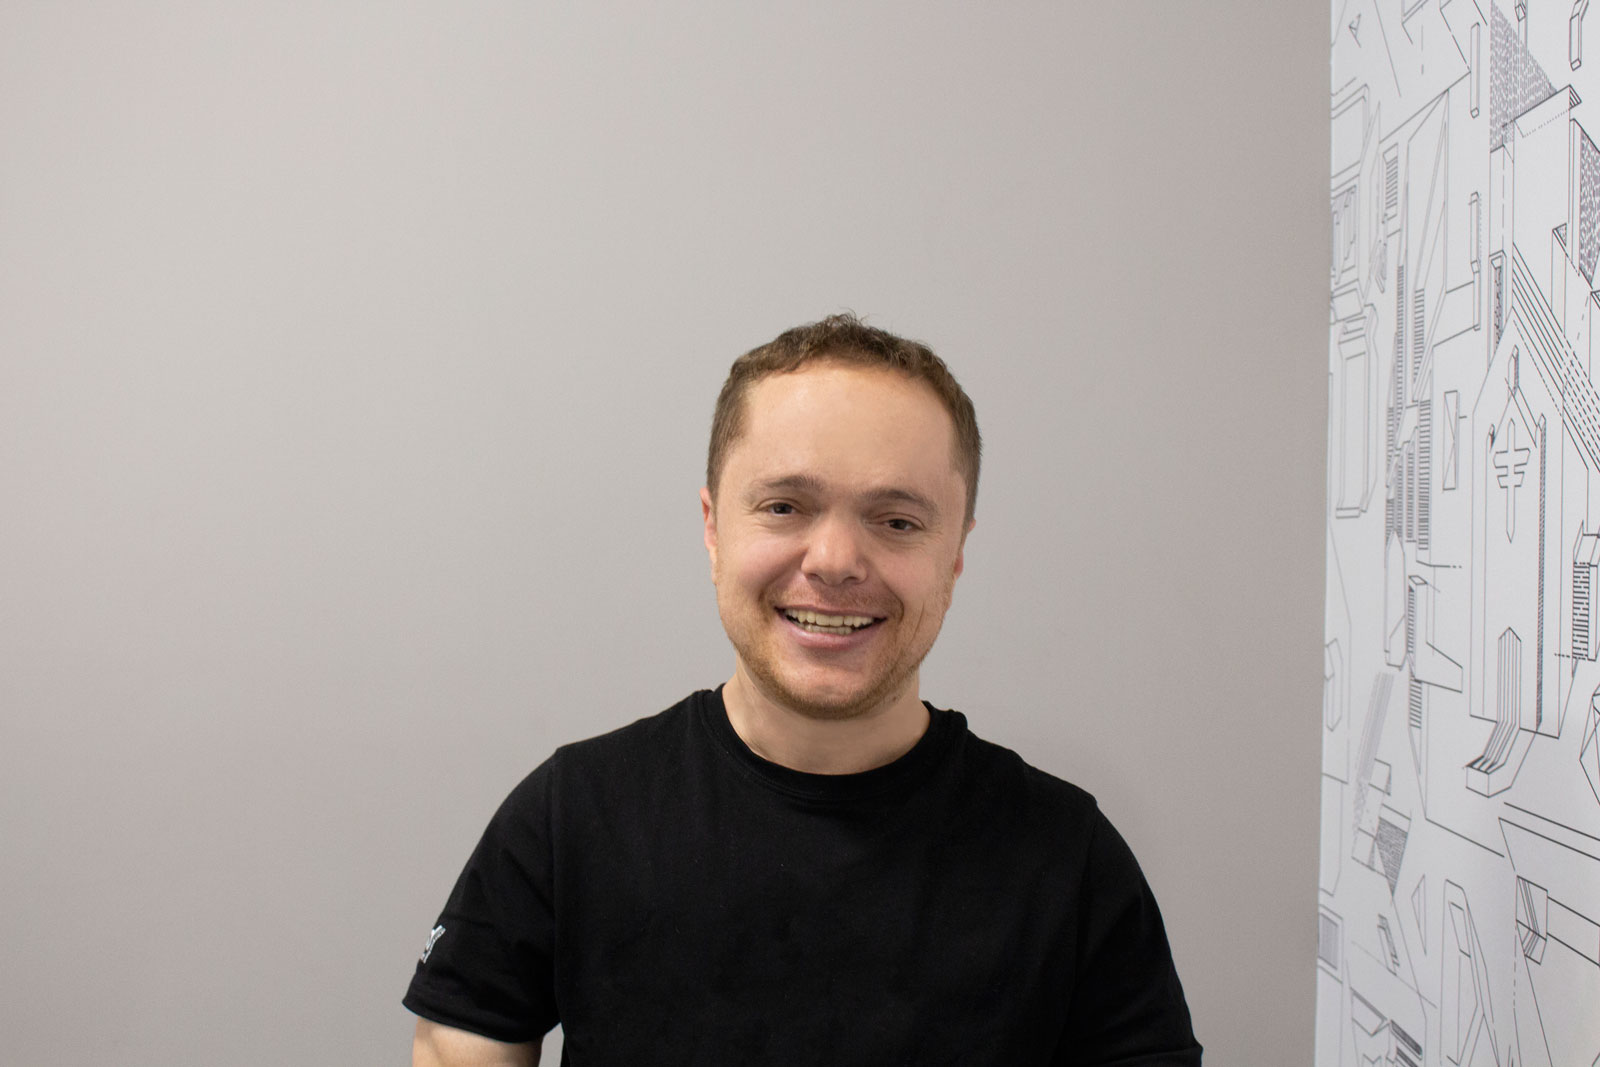 Headshot of man in black t-shirt, smiling 